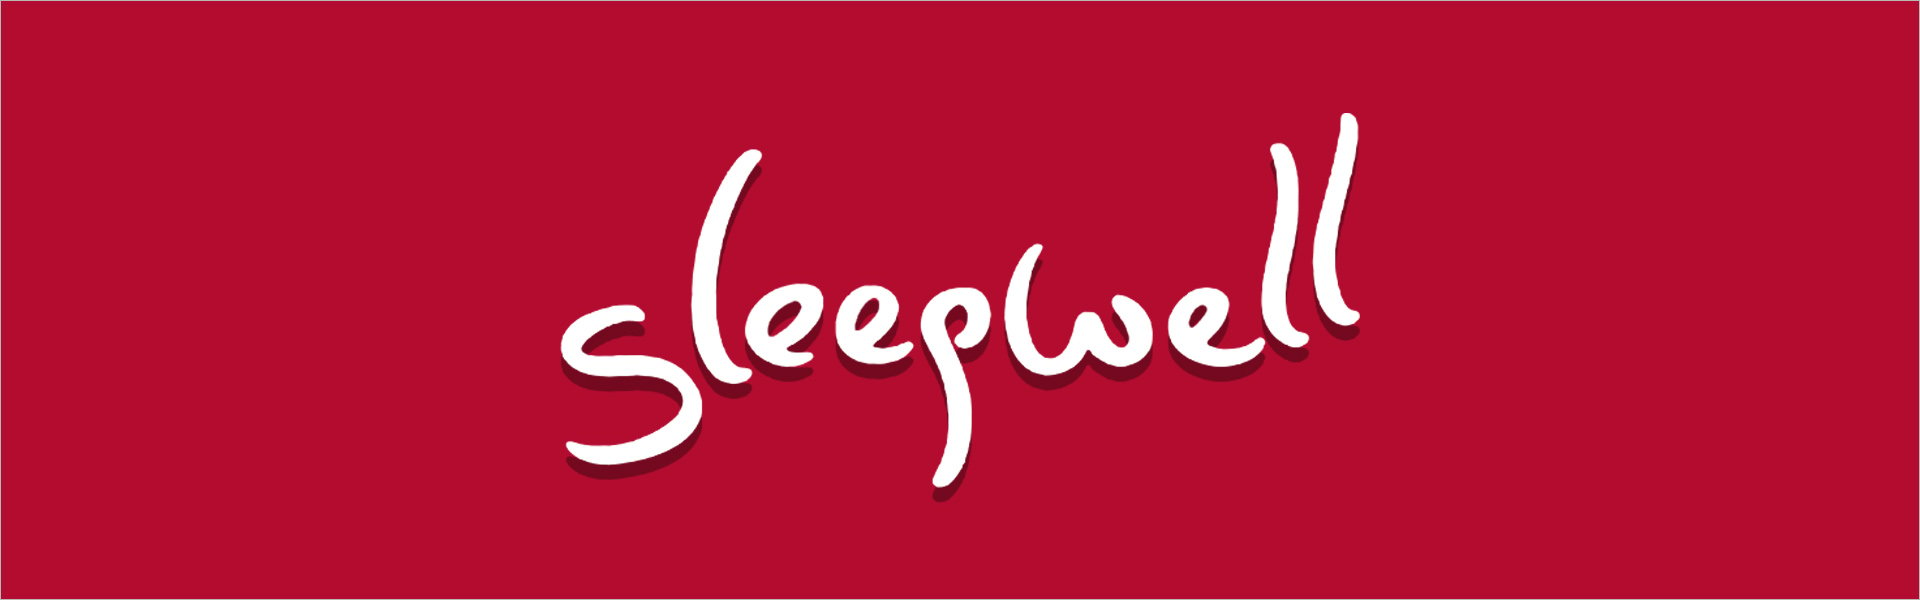 Наматрасник Sleepwell TOP Coco, 80 x 200 см Sleepwell